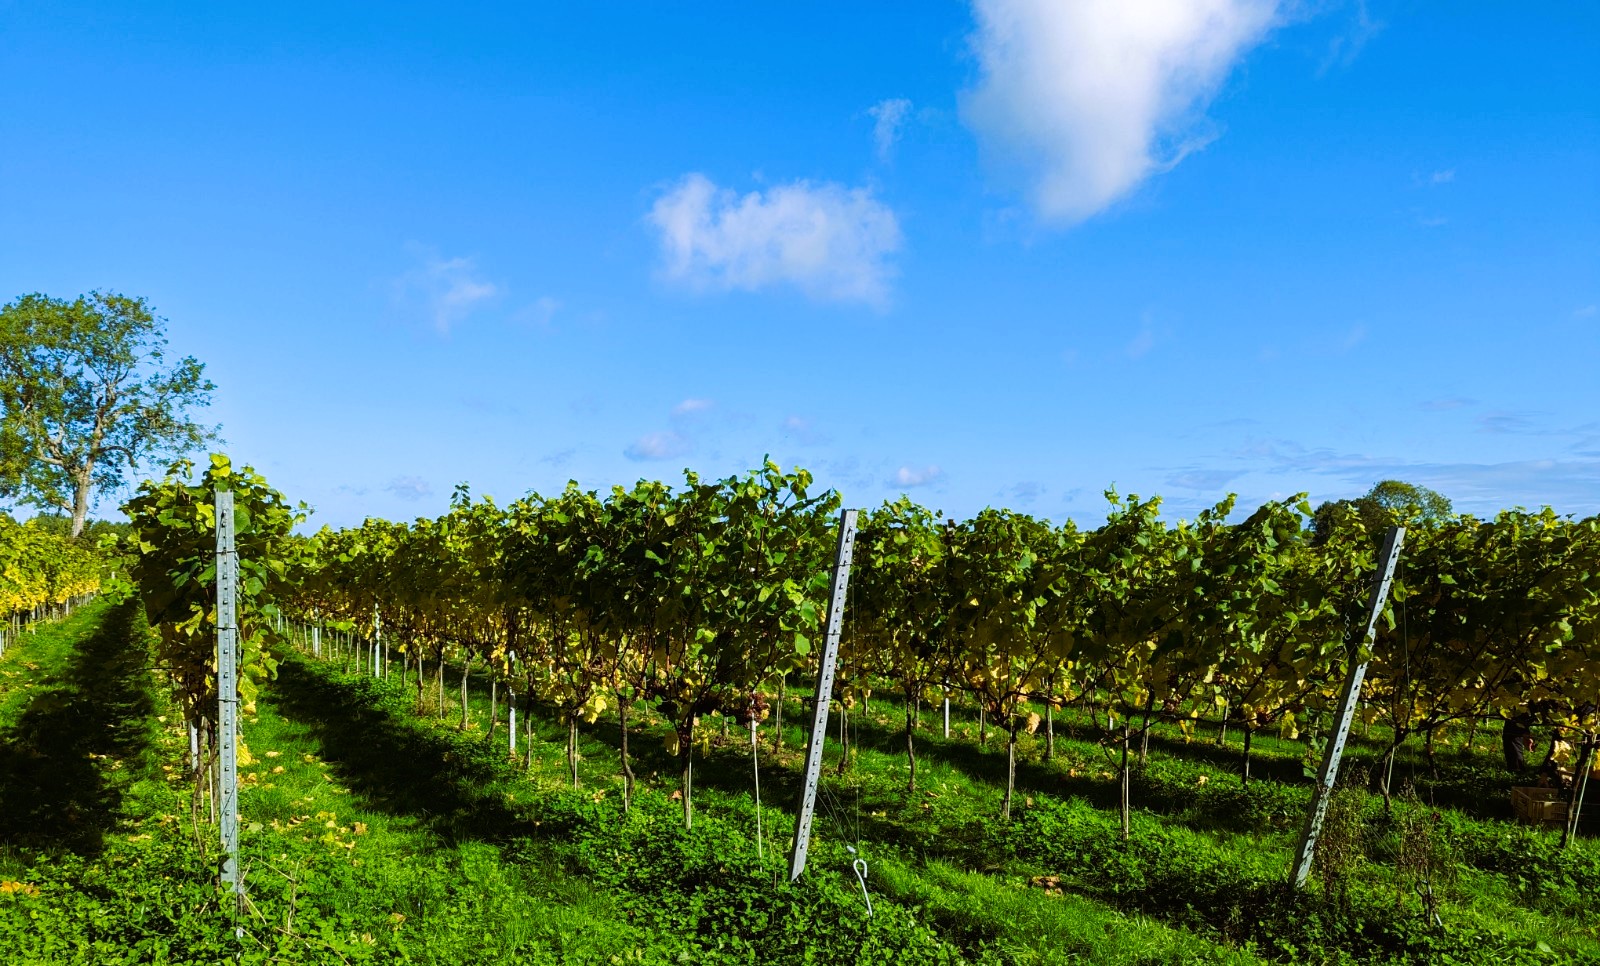 English sparkling wine vineyard in summer